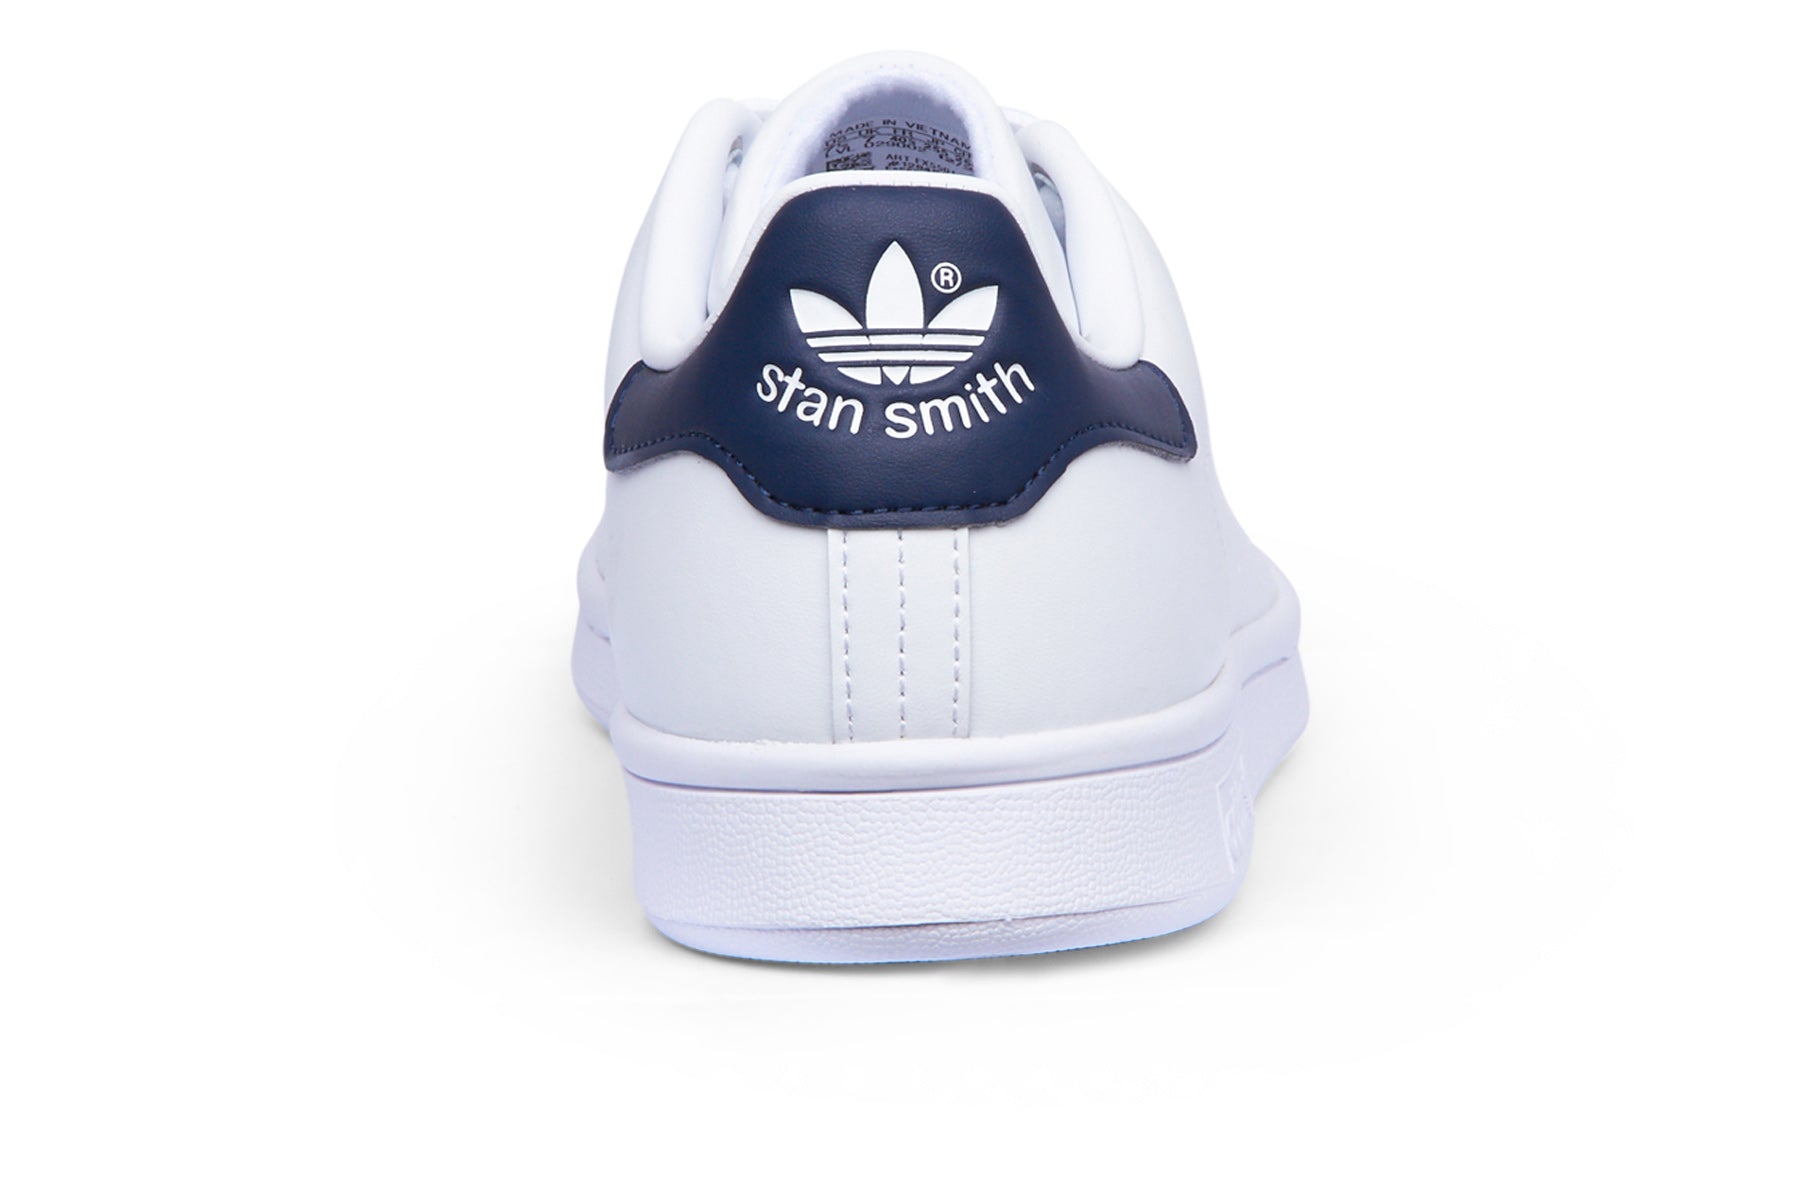 Adidas Stan Smith - FTWR White/FTWR White/Collegiate Navy